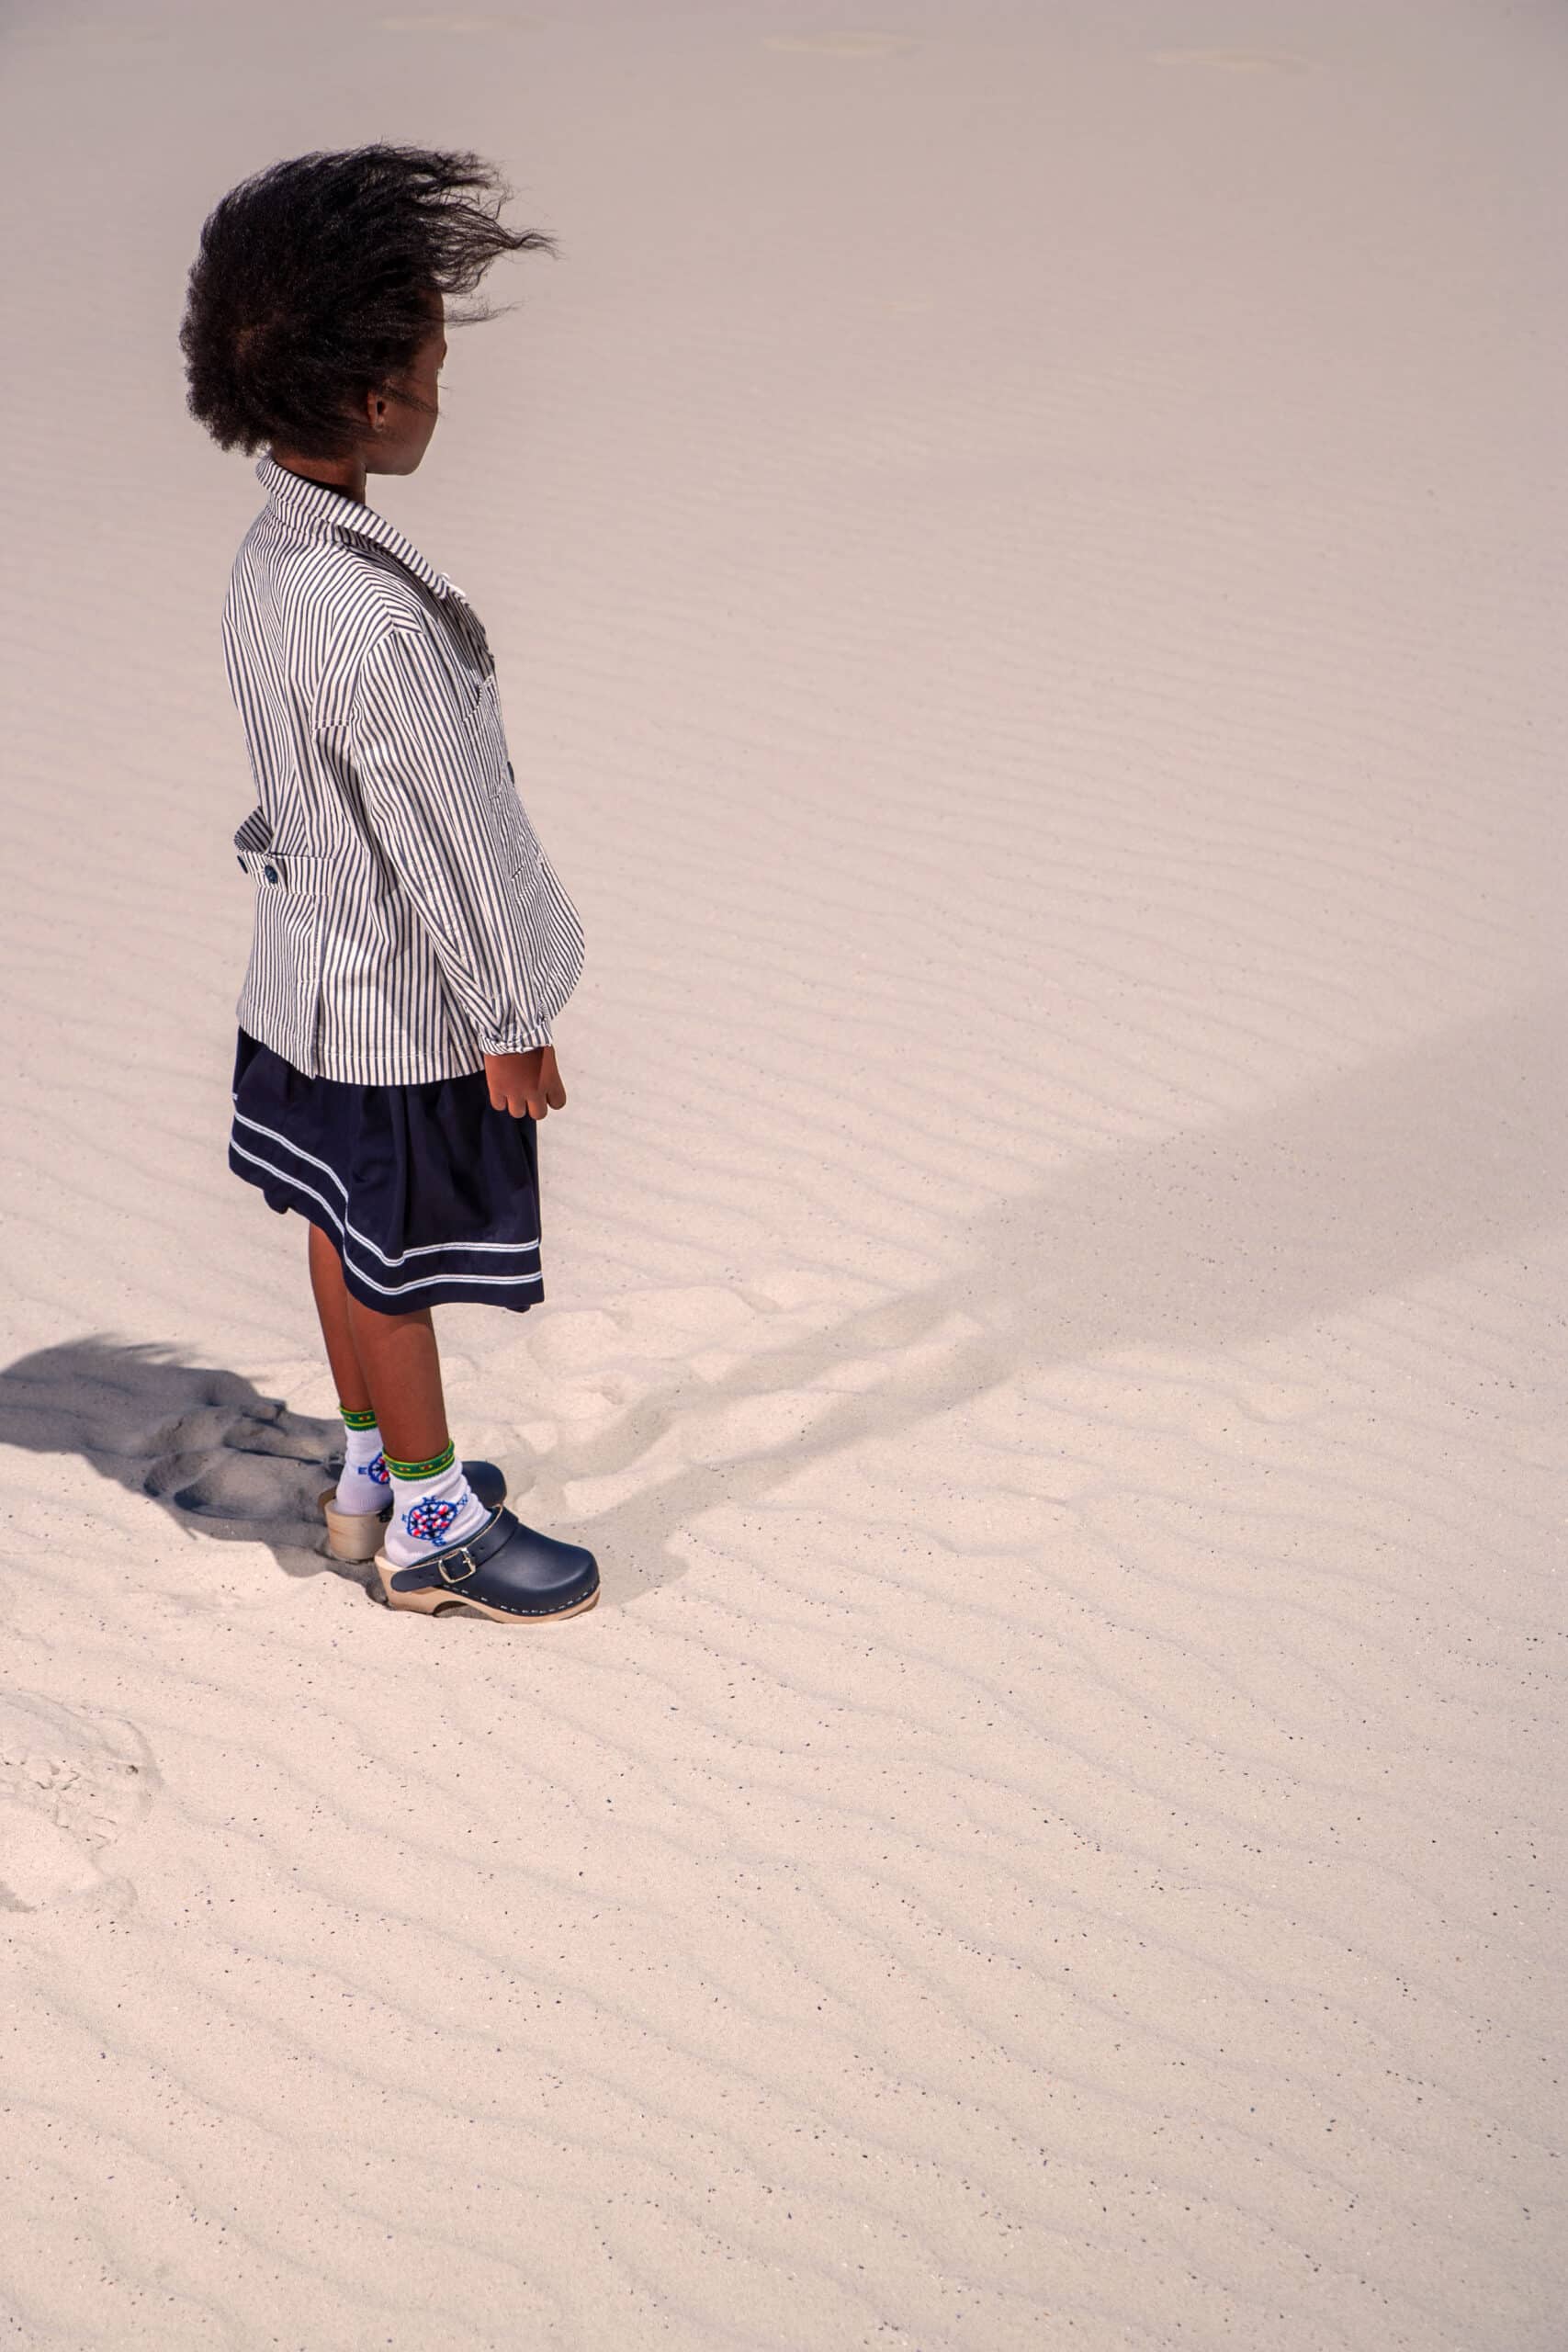 Ein kleines Kind mit vollem Haar läuft auf einem Sandboden und hinterlässt Fußabdrücke. Das Kind trägt eine gestreifte Jacke und einen dunklen Rock und hellblaue Schuhe. © Fotografie Tomas Rodriguez